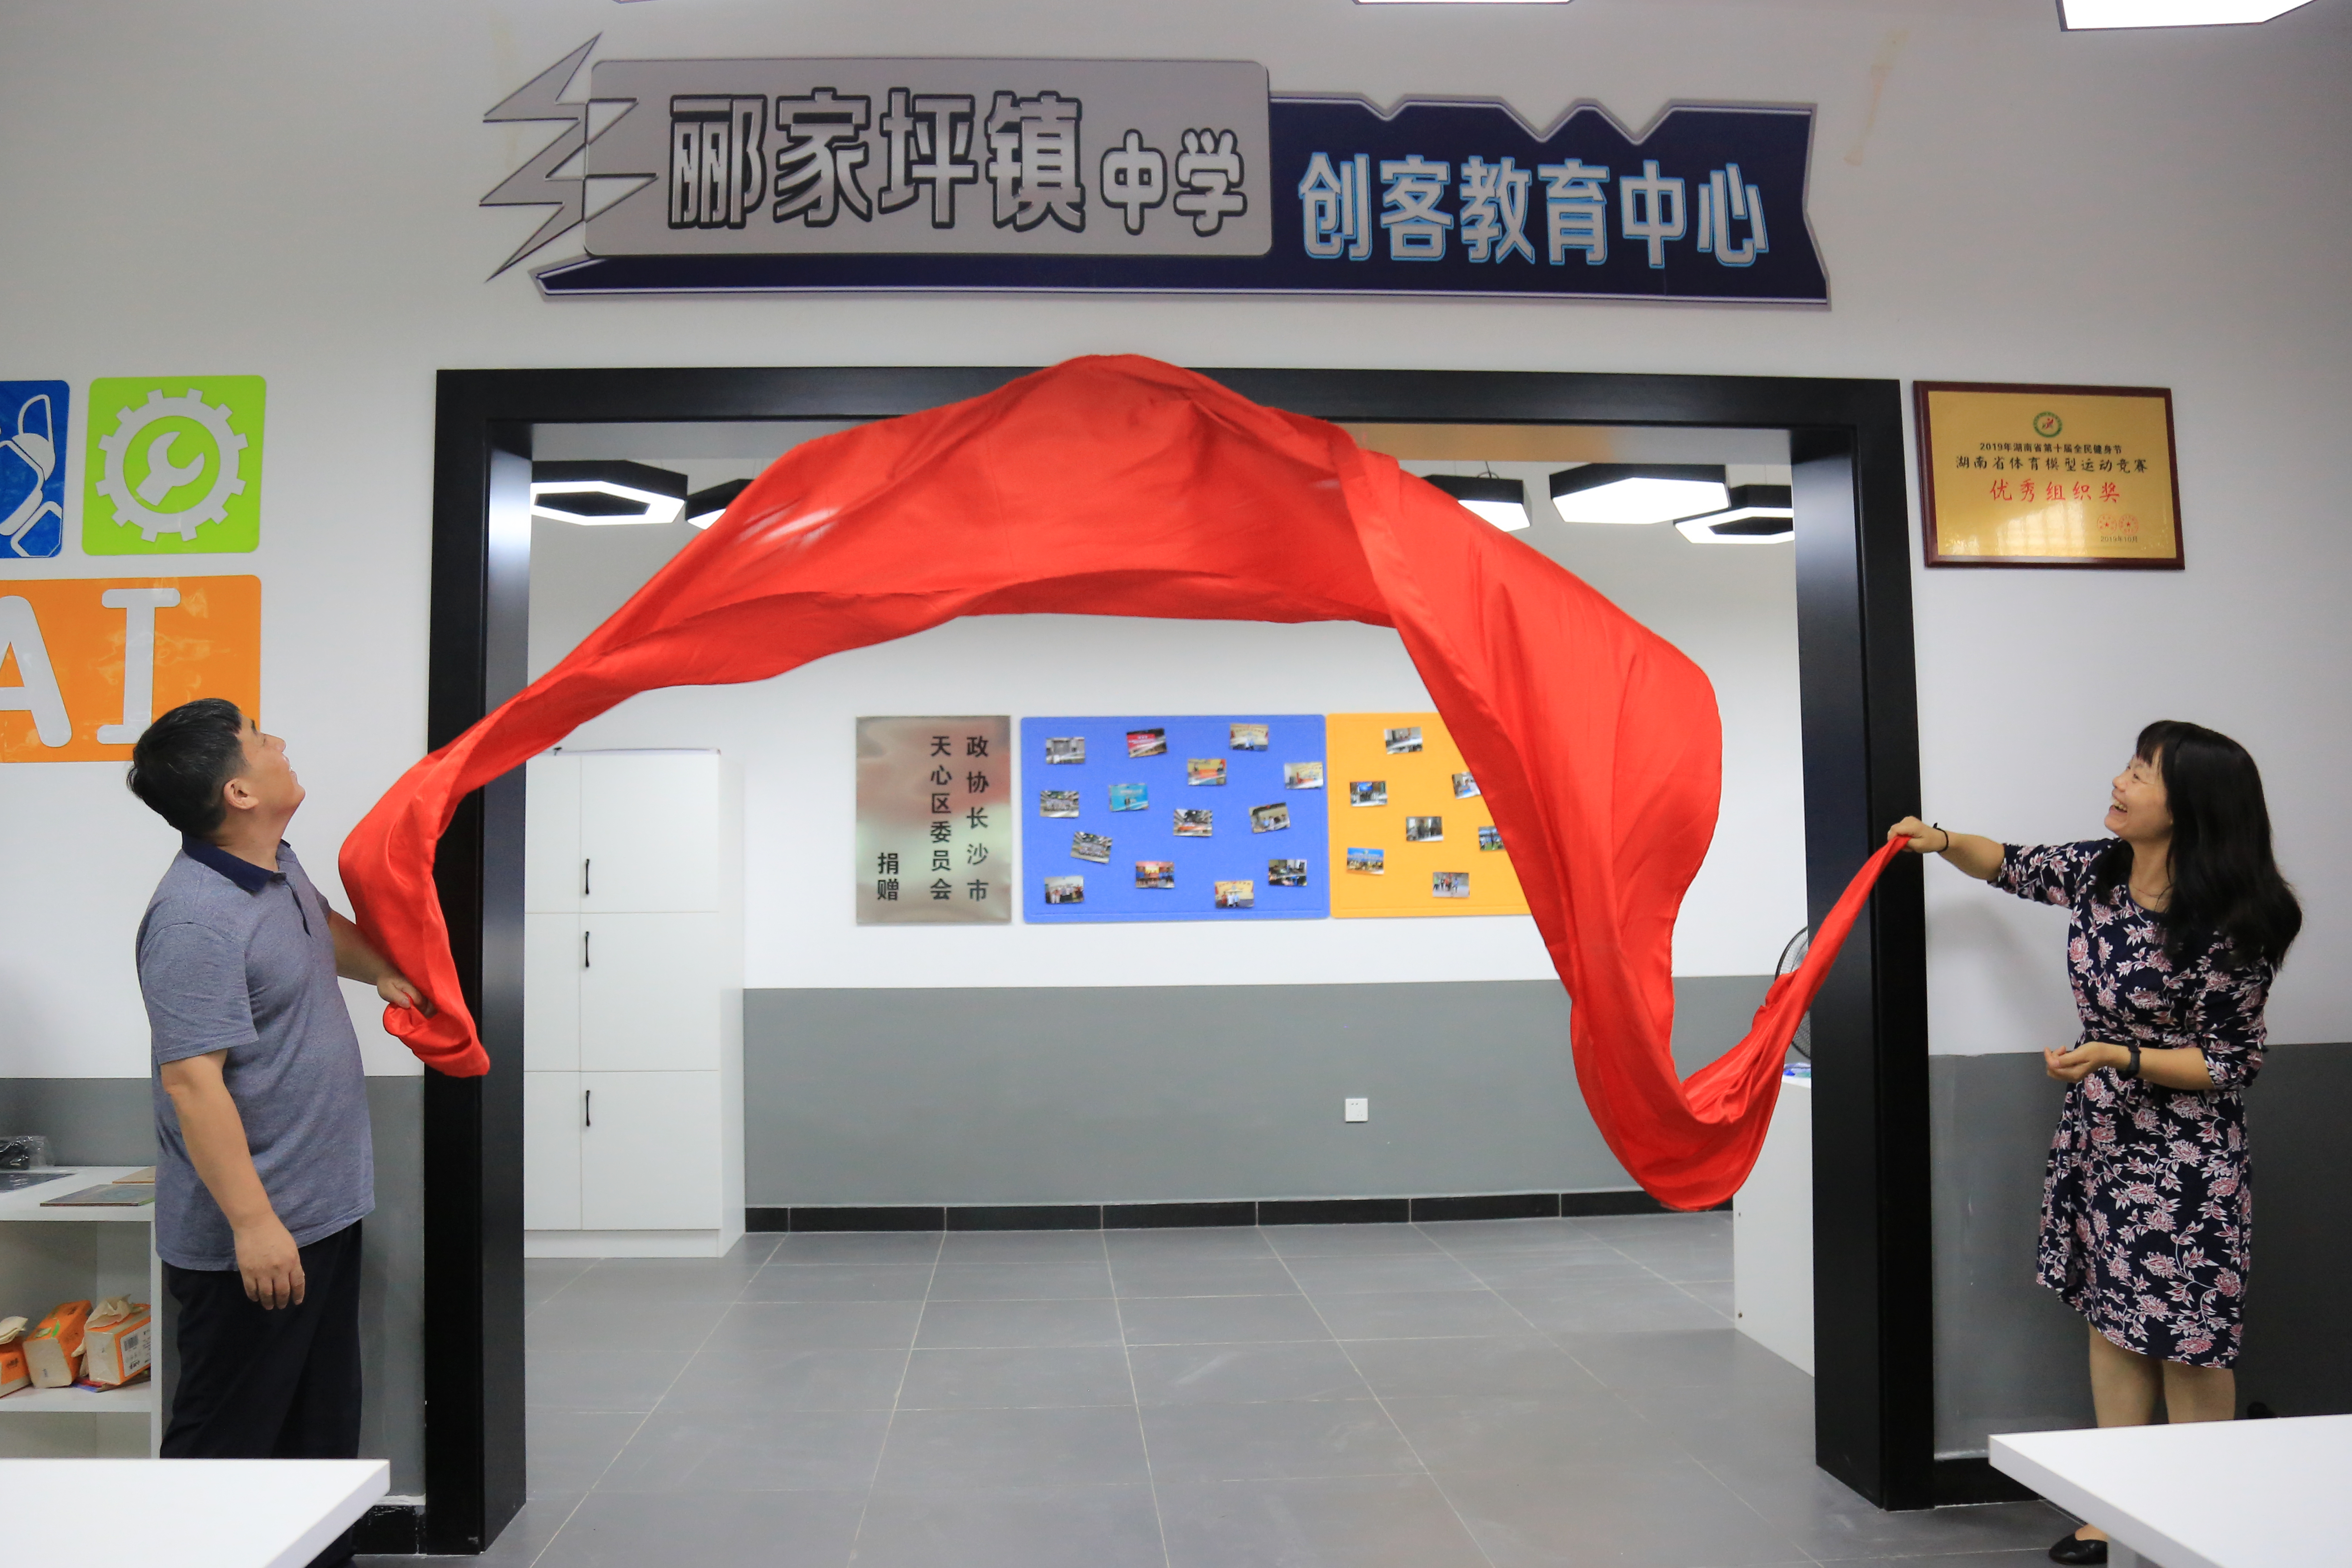 邵阳县郦家坪镇中学创客教育中心正式揭牌。